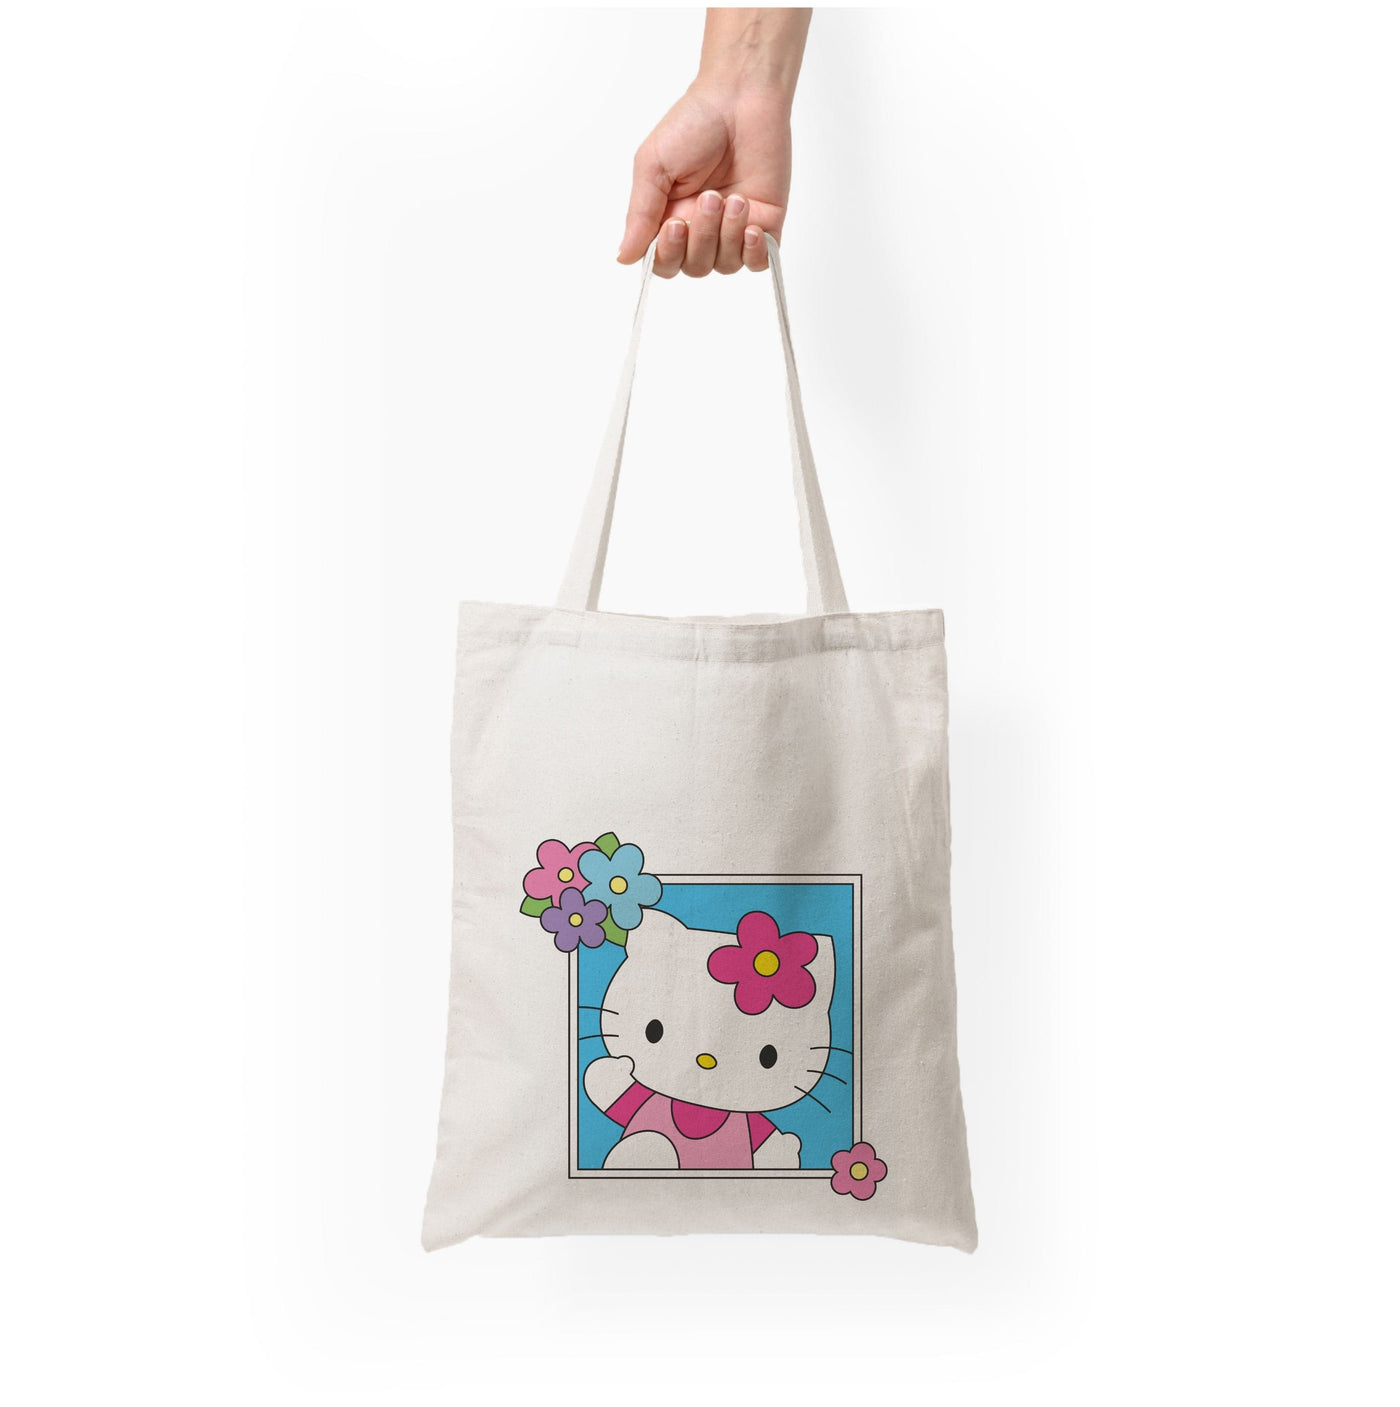 Flower Polaroid - Hello Kitty Tote Bag